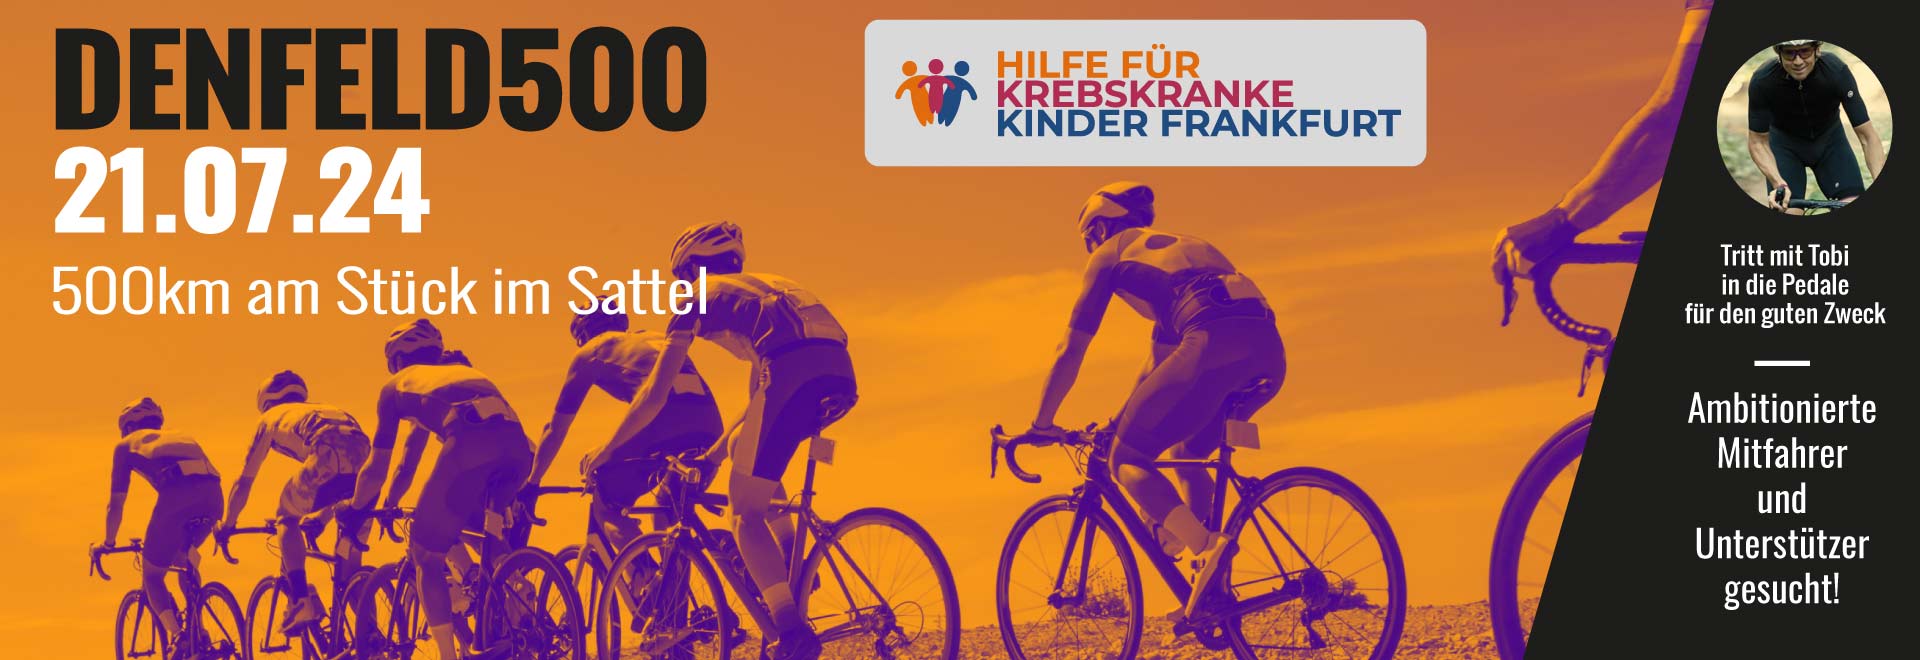 Denfeld500 am 21.7. Spendenfahrt für die Kinderkrebshilfe Frankfurt